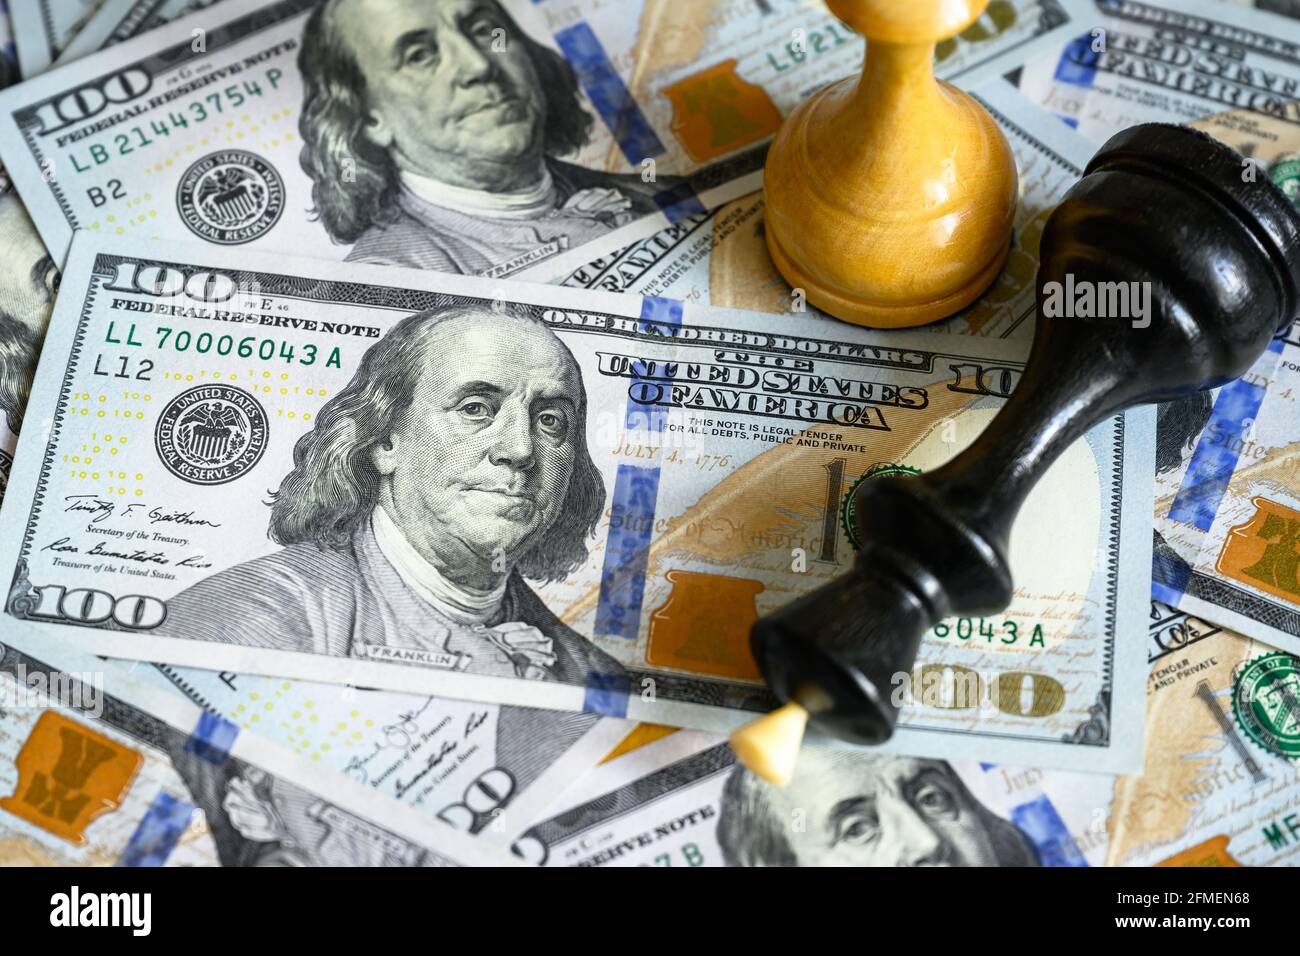 Schachfiguren auf US-Dollar-Scheinen häufen sich, König liegt auf Bargeld. Amerikanische Banknoten und Spiel. Konzept von Handelskrieg, Geschäftsstrategie, Dollar-Führung, los Stockfoto